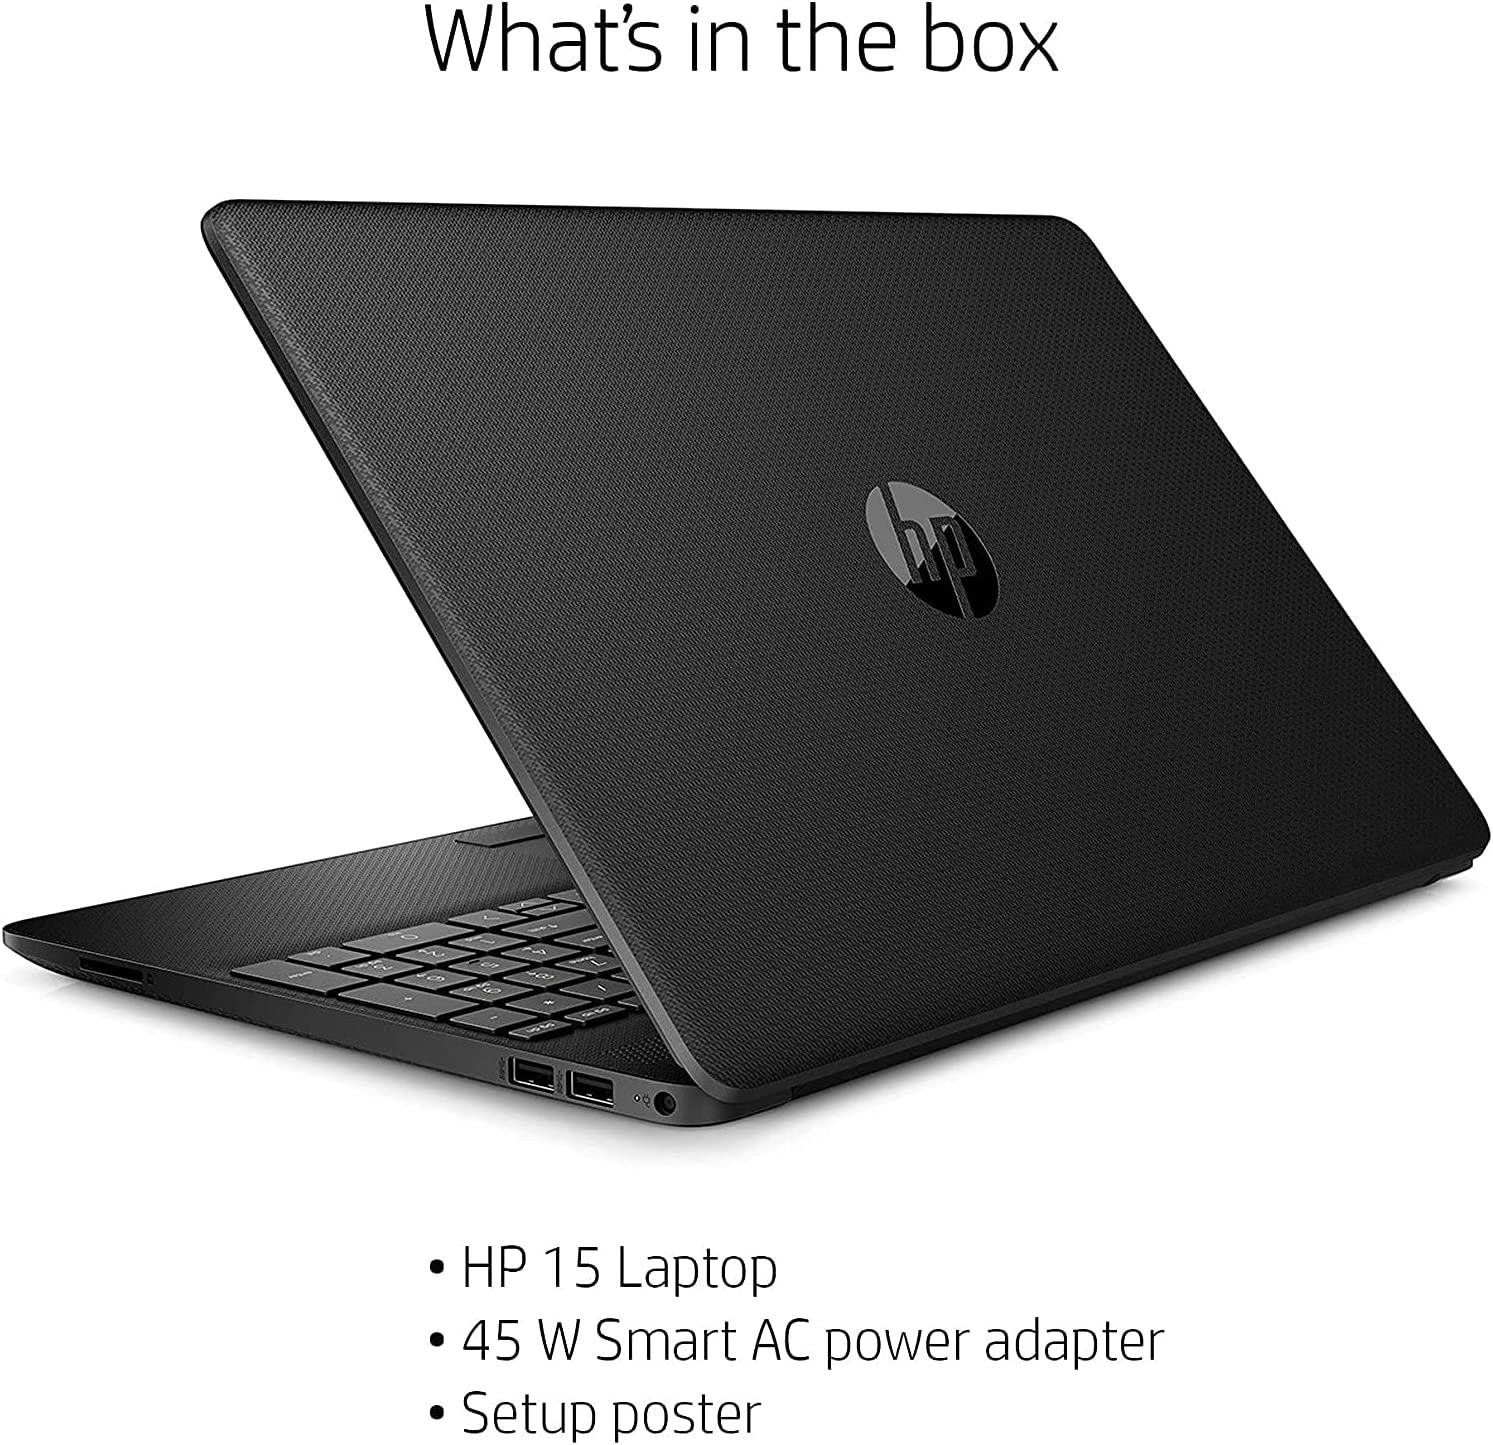 لپ تاپ اچ پی Hp 15 Notebook Laptop 156” Fhd Display Intel Celeron N4020 Upto 2ghz 8gb Ram 5421